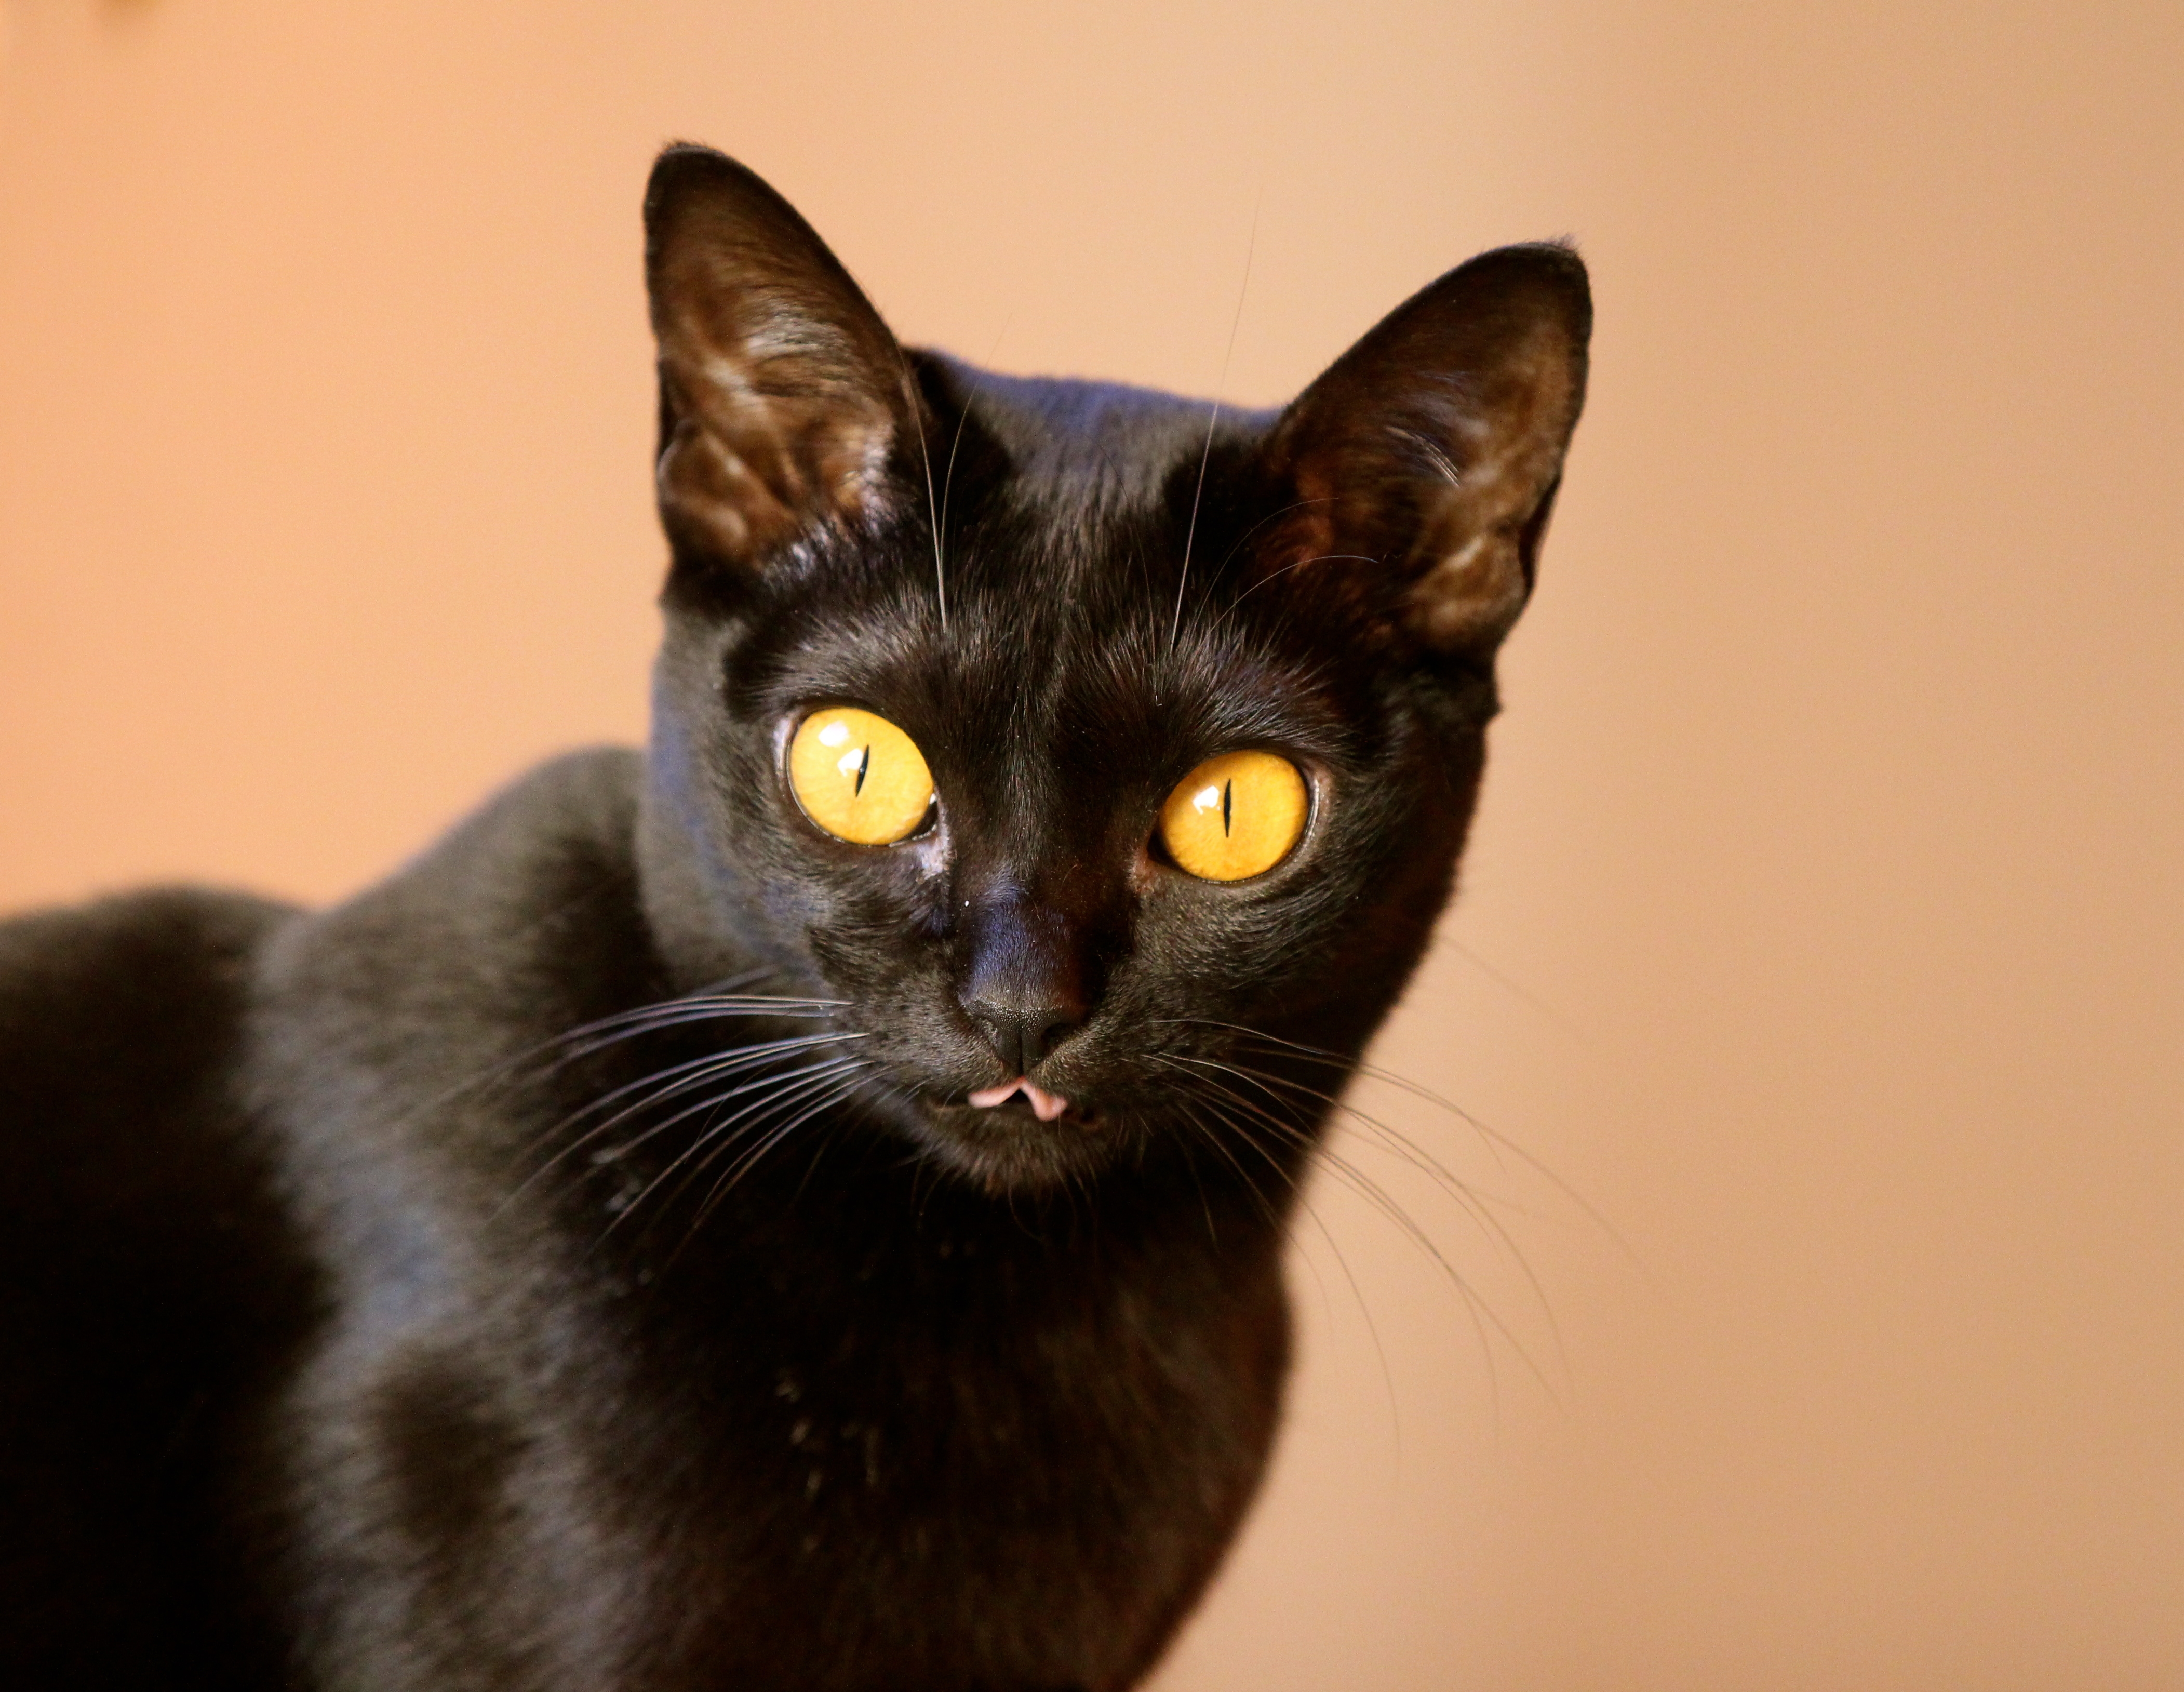 Порода черной кошки с желтыми глазами. Бомбейская кошка. Чёрная кошка порода Бомбейская. Британская Бомбейская кошка. Бомбей и Бомбейская кошка.